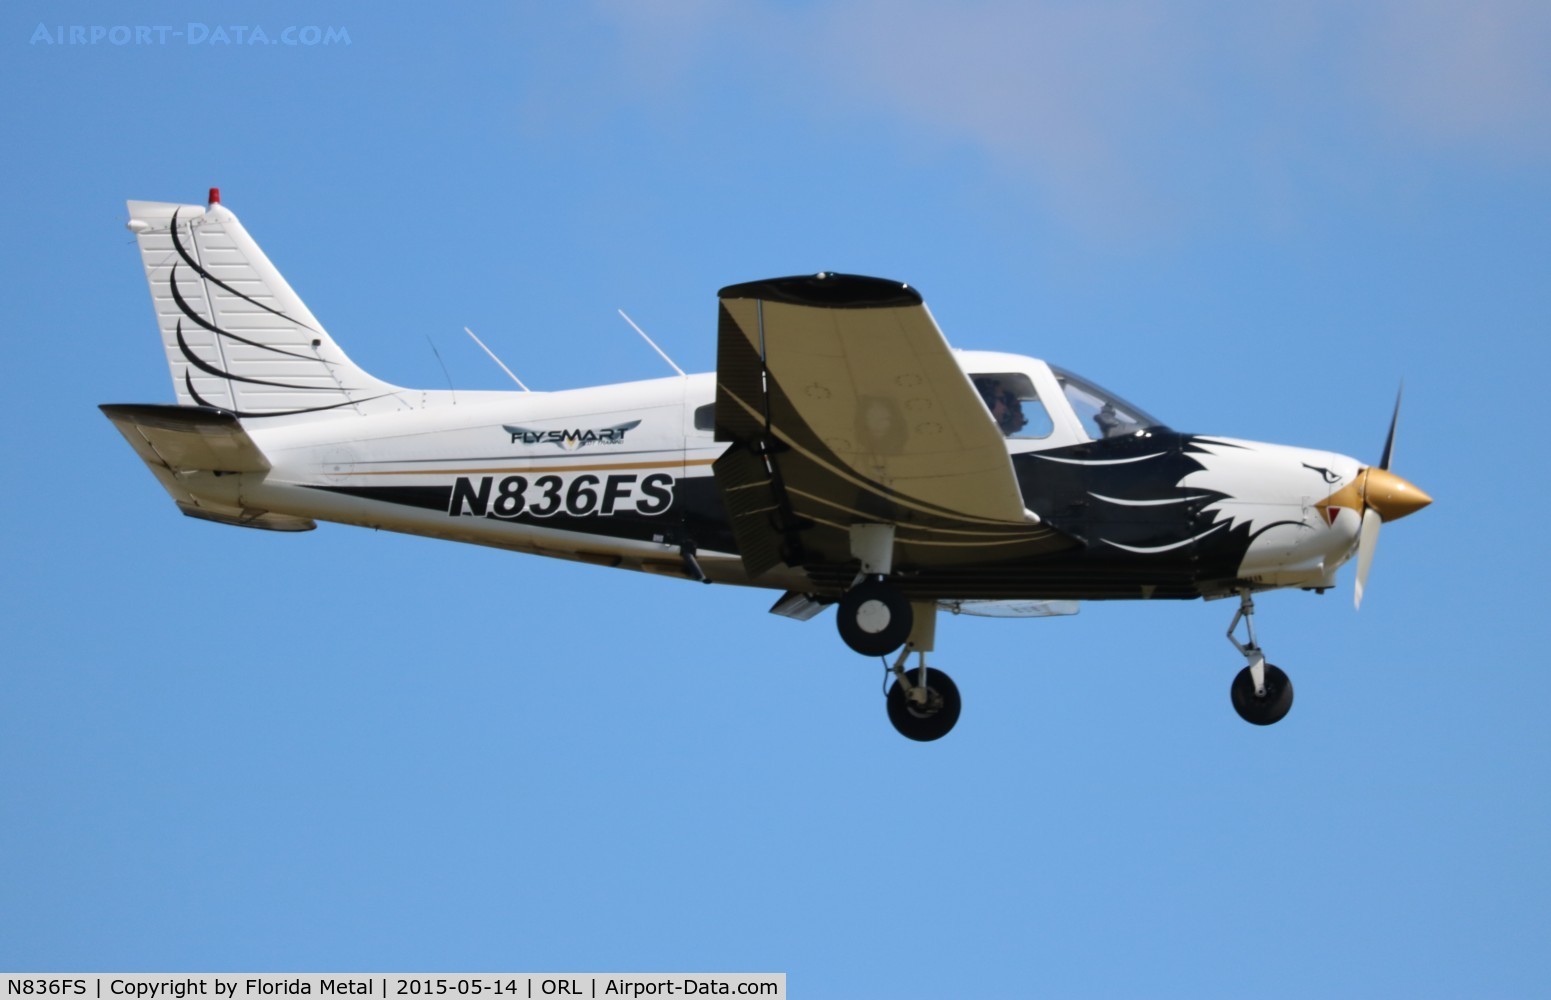 N836FS, 1981 Piper PA-28-161 C/N 28-8116200, PA-28-161